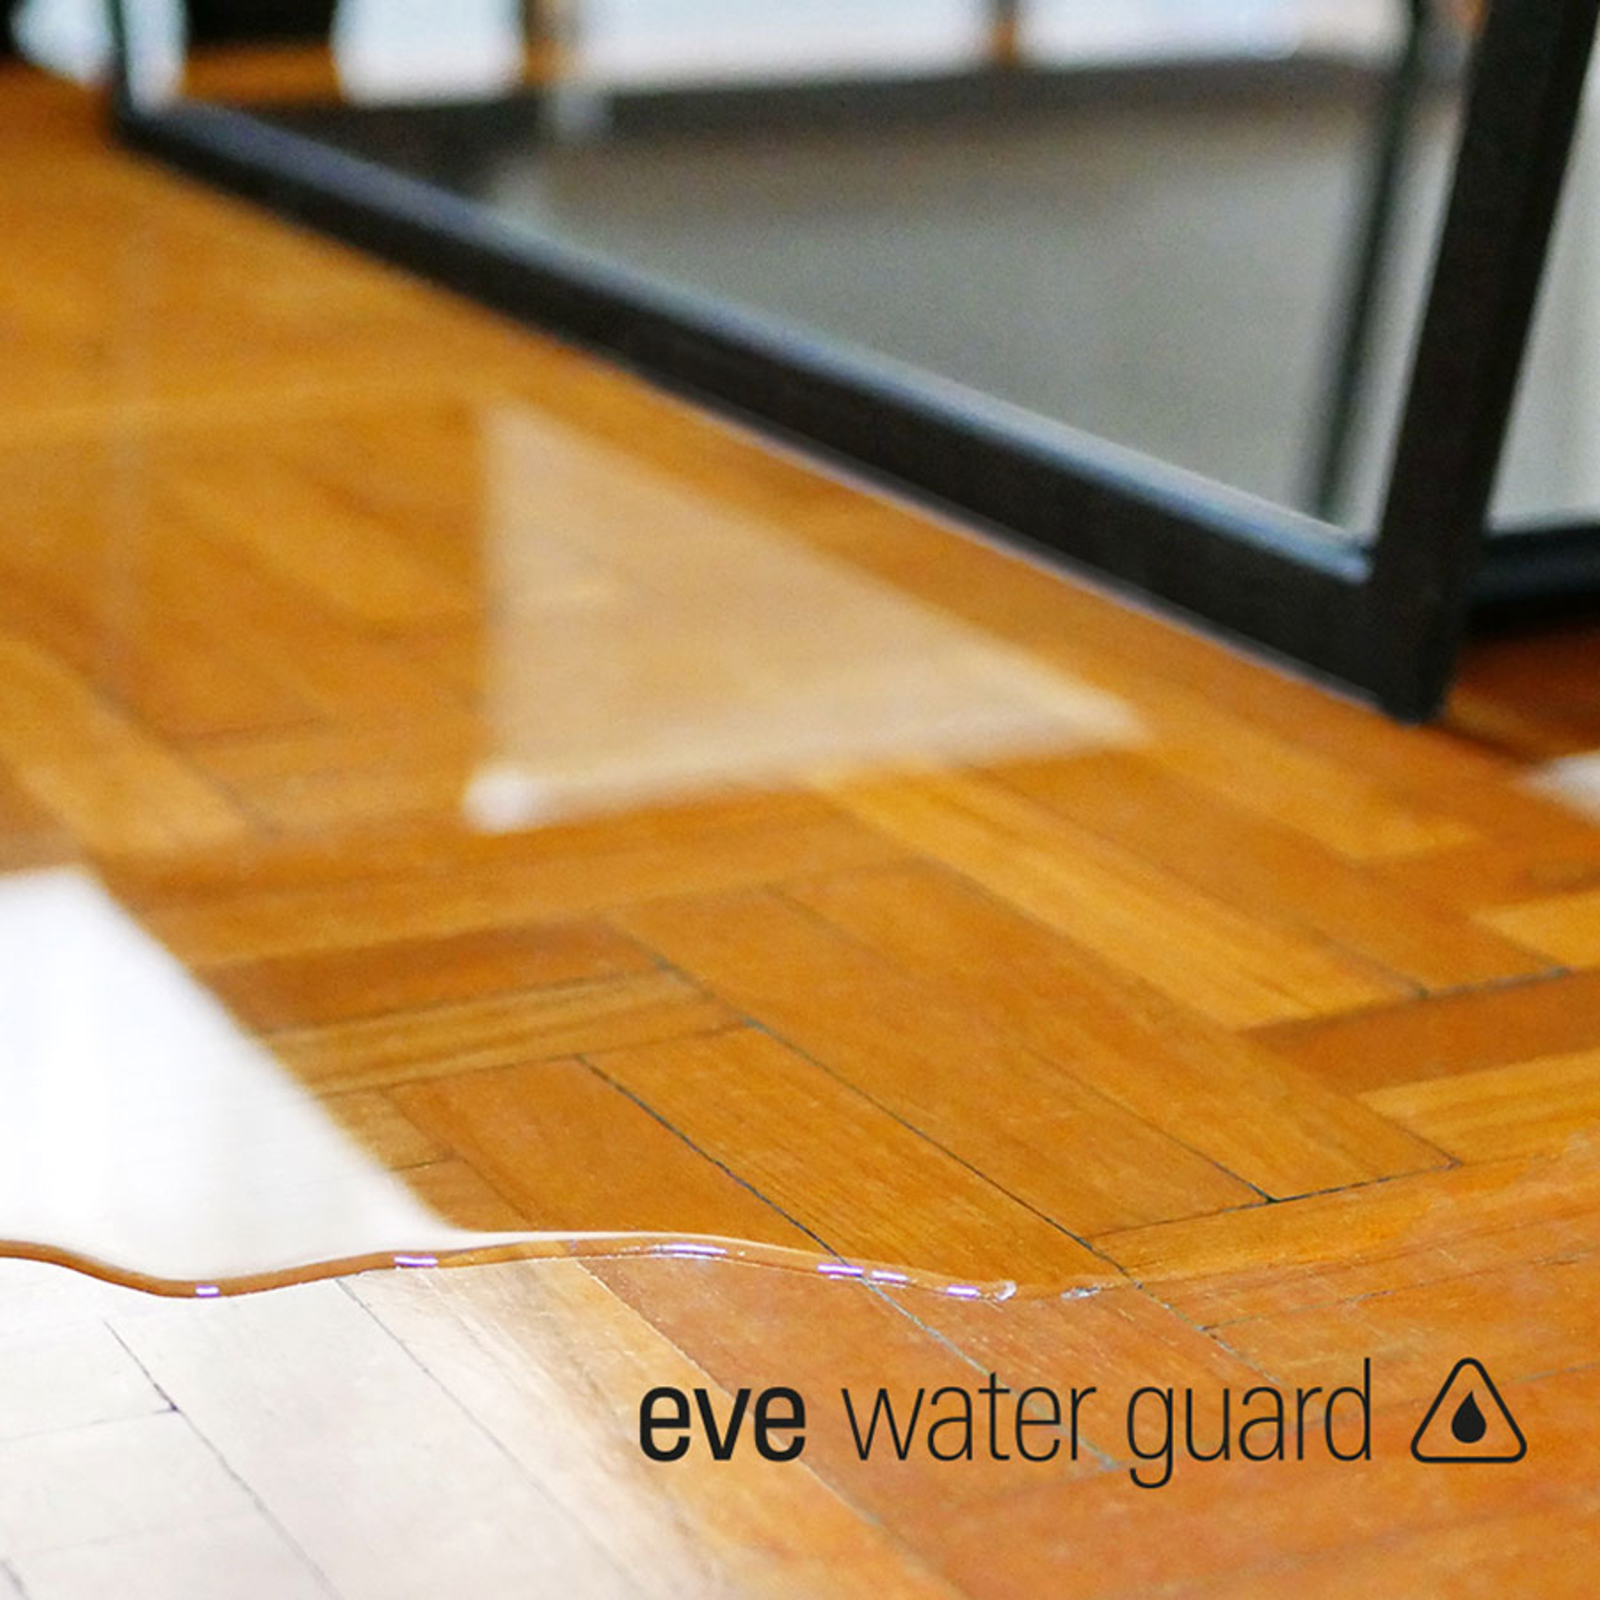 Eve Water Guard, inteligentný detektor vody so závitom